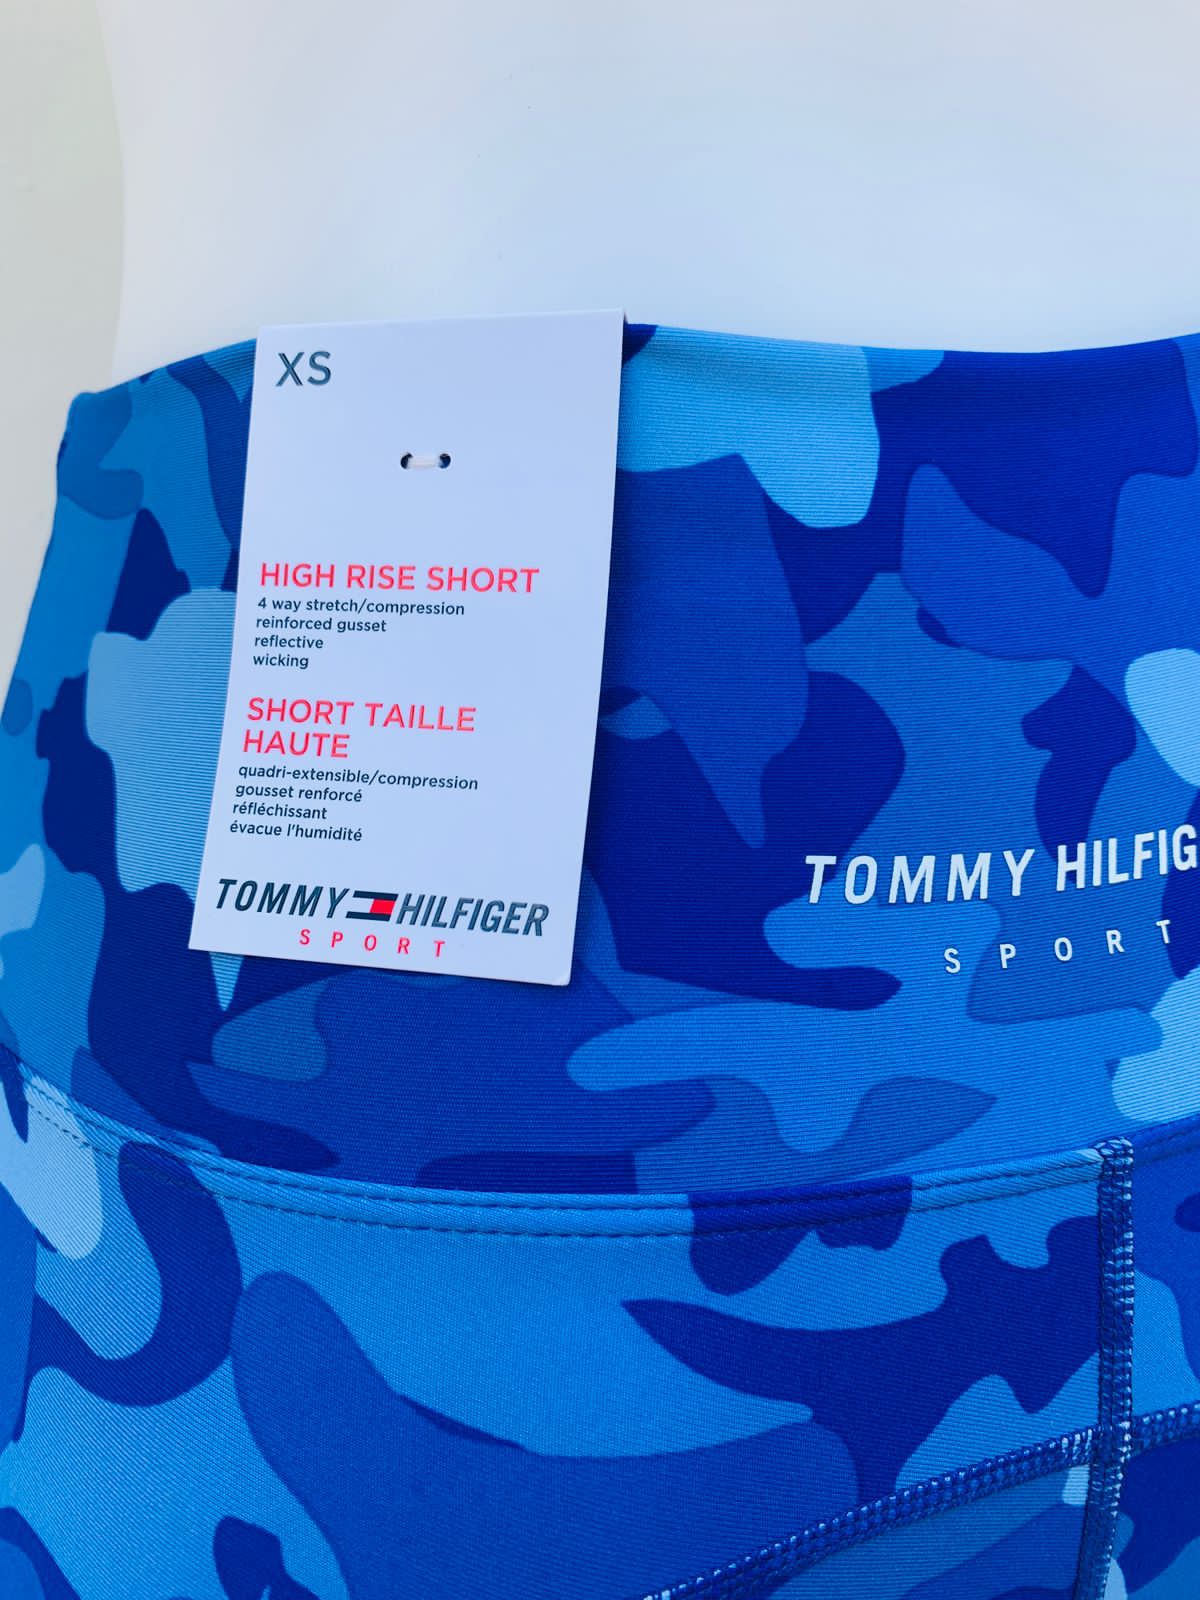 Legging/ licra TOMMY HILFIGER original azul con estampado militar y línea roja al lado.